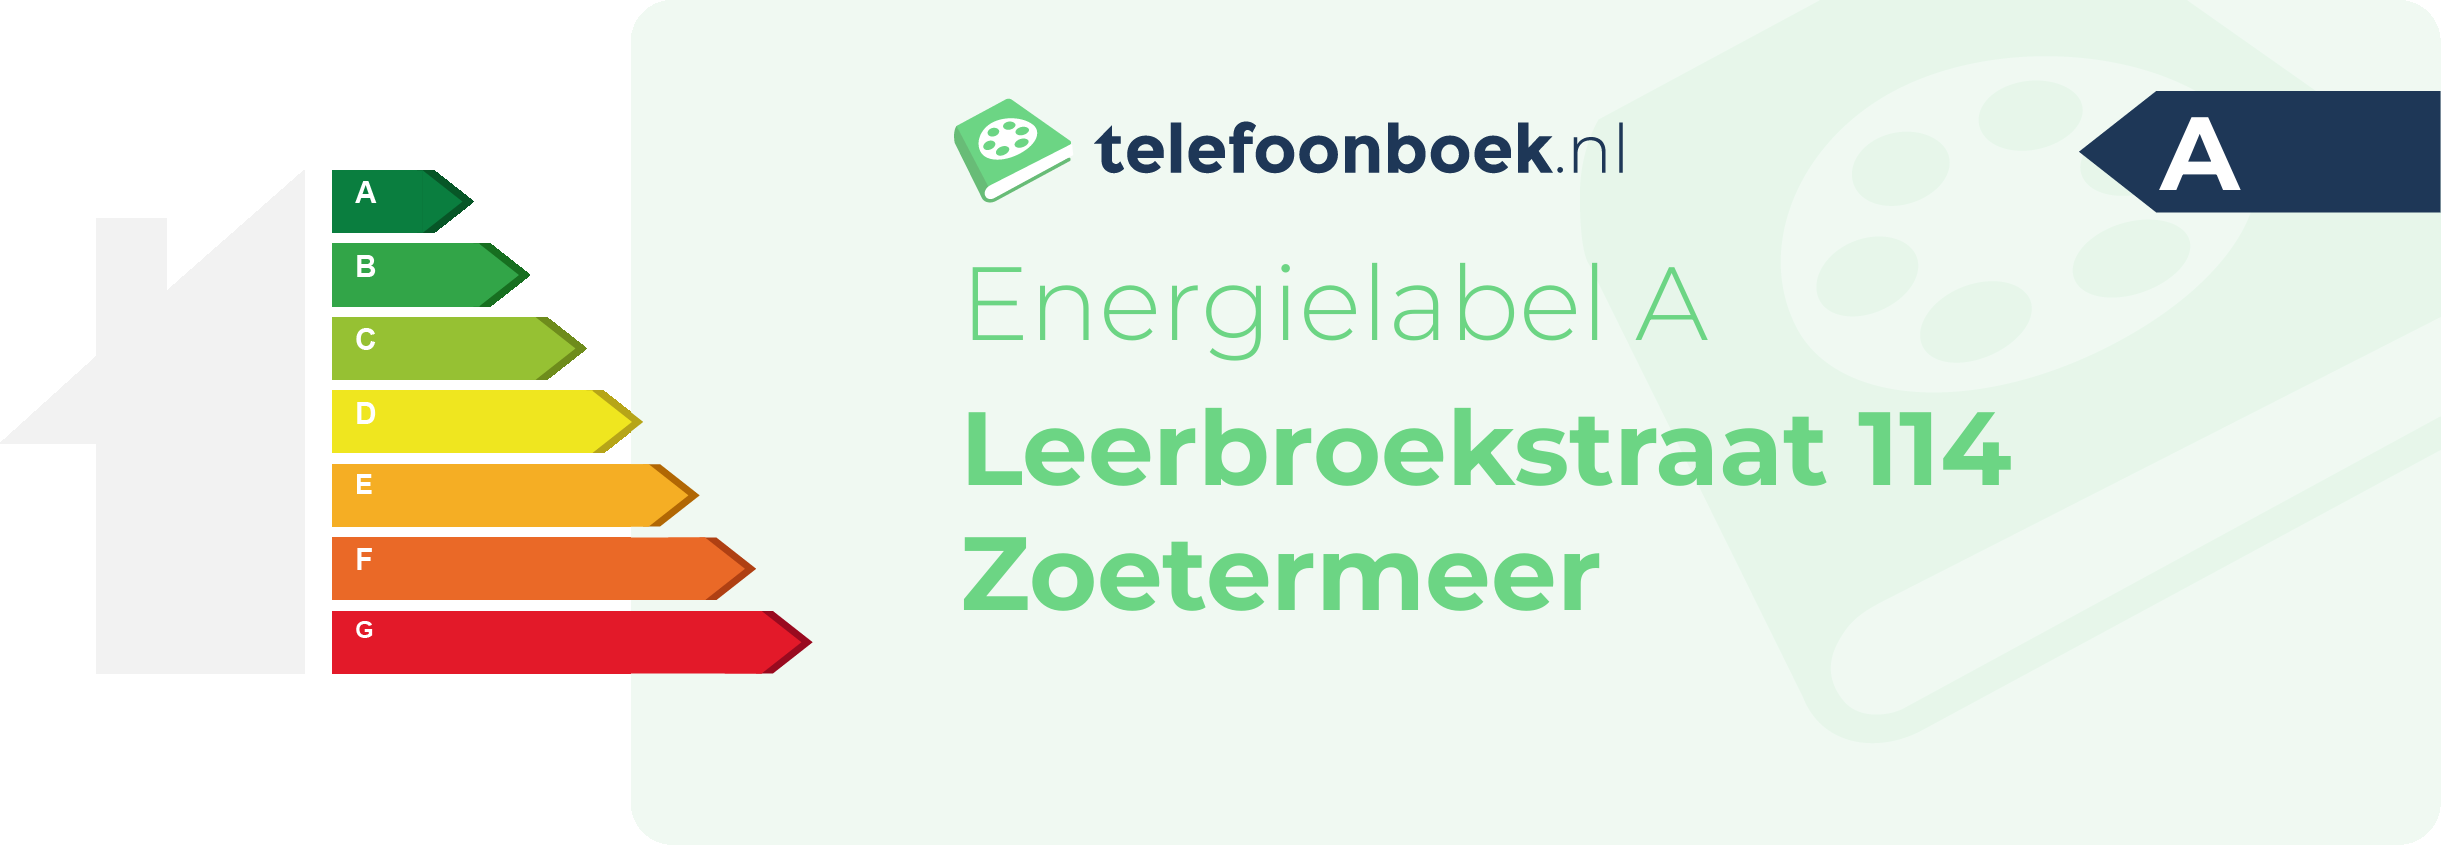 Energielabel Leerbroekstraat 114 Zoetermeer